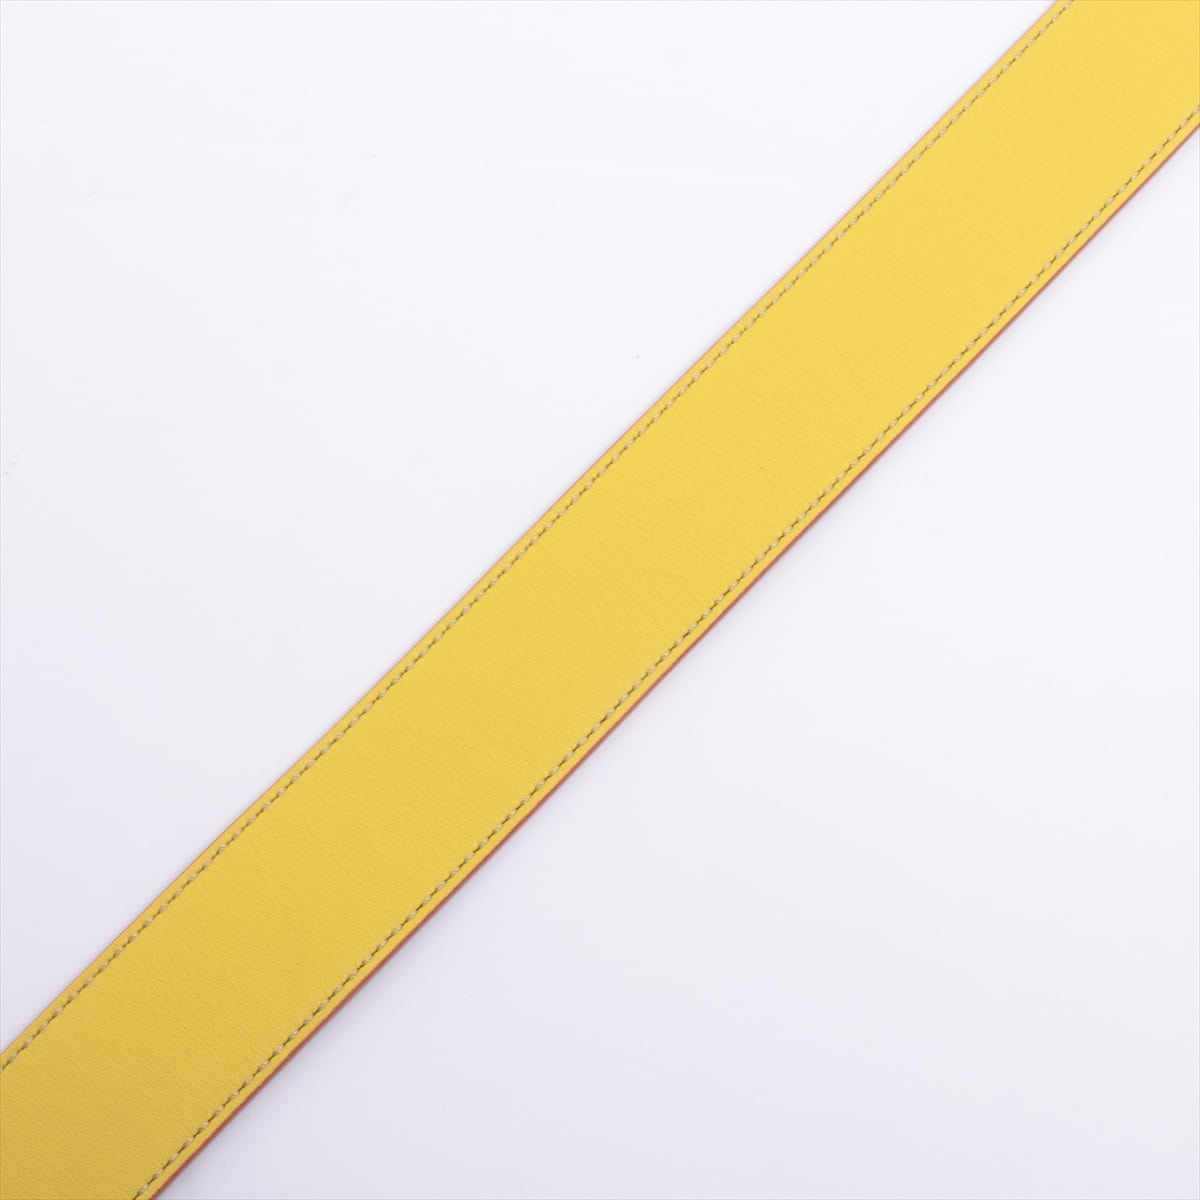 Fendi Strap You Shoulder strap GP & leather Yellow x navy